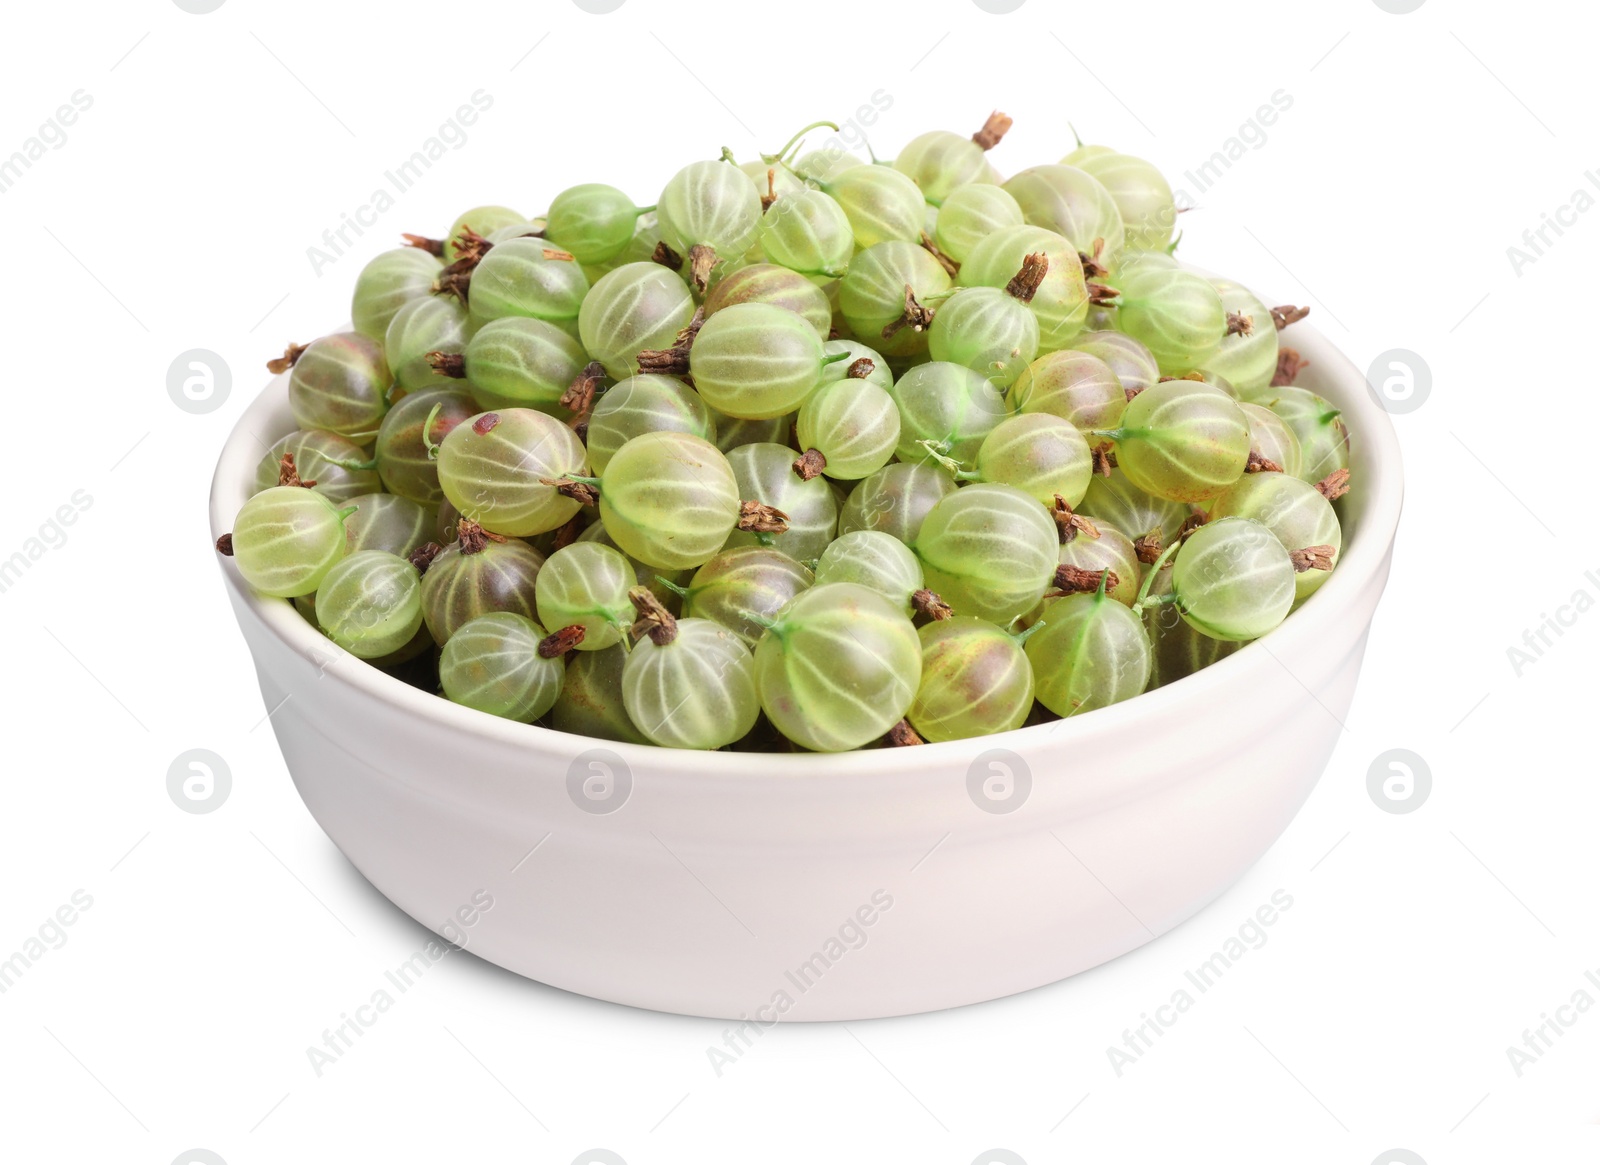 Photo of Ceramic bowl full of ripe gooseberries isolated on white